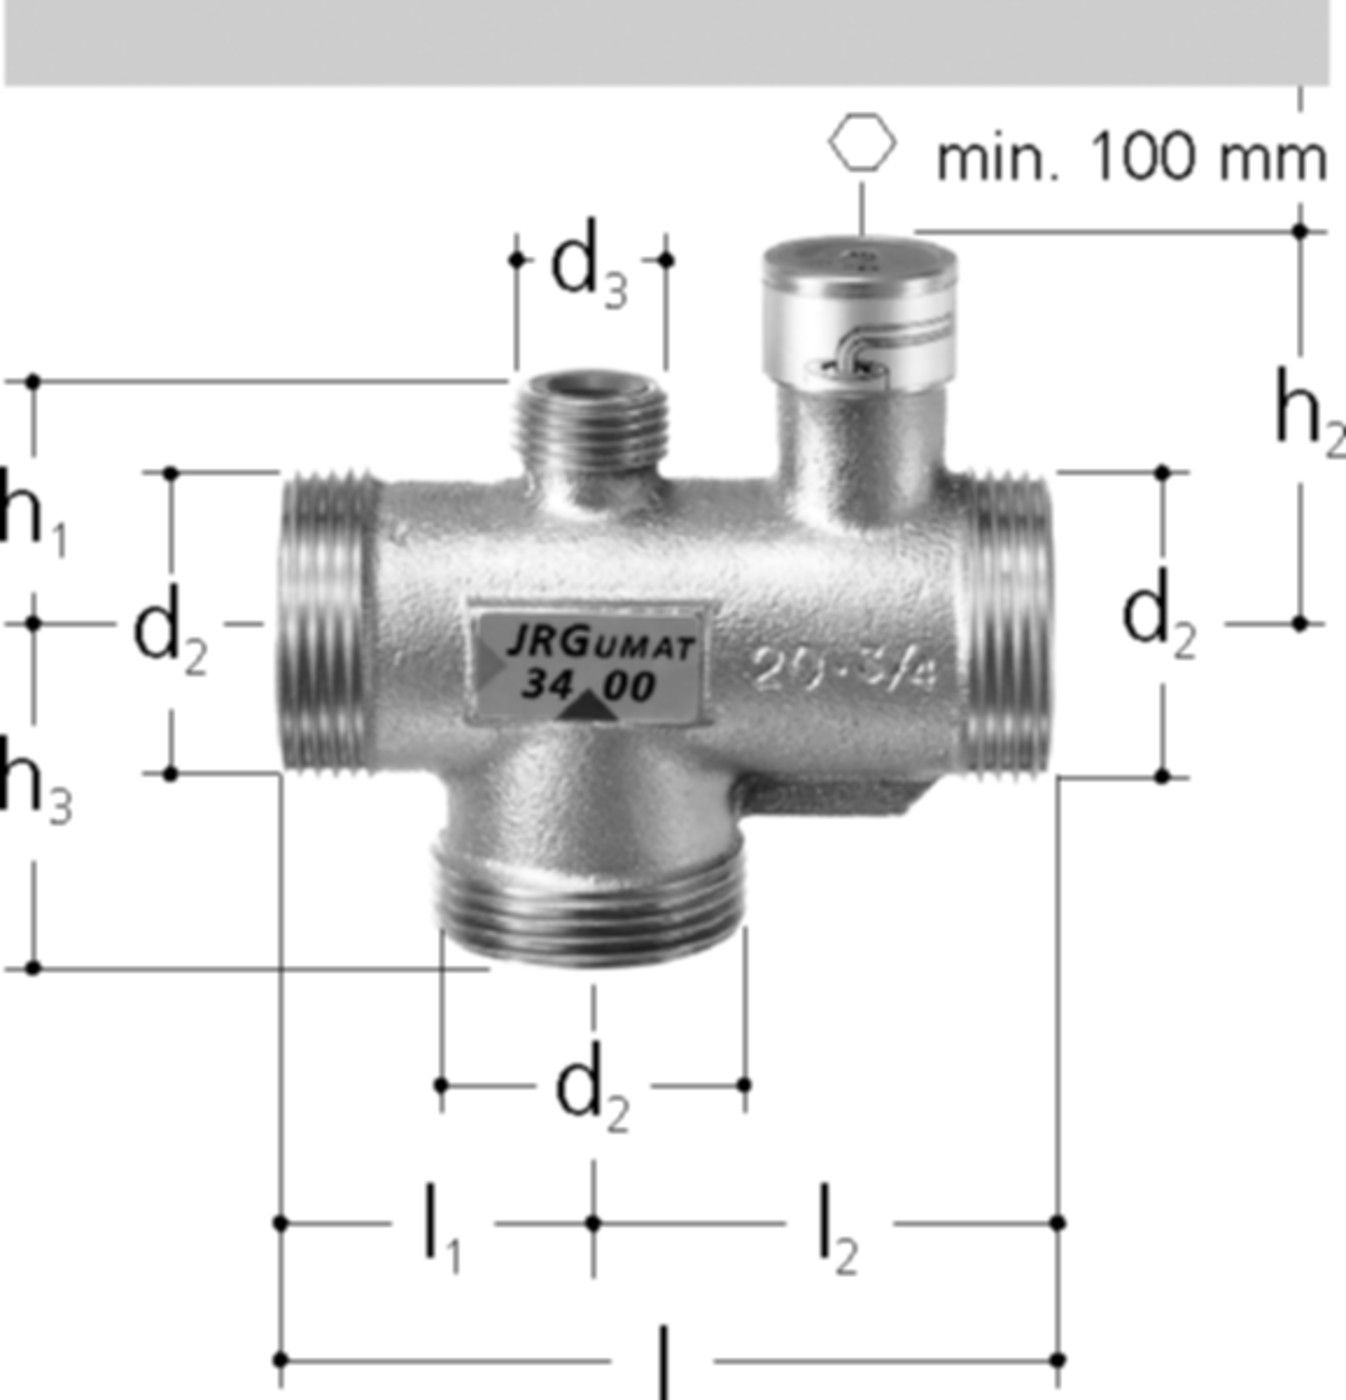 JRGUMAT Thermomischer PN 10 1/2" DN 15 48°C 3400.914 - JRG Armaturen